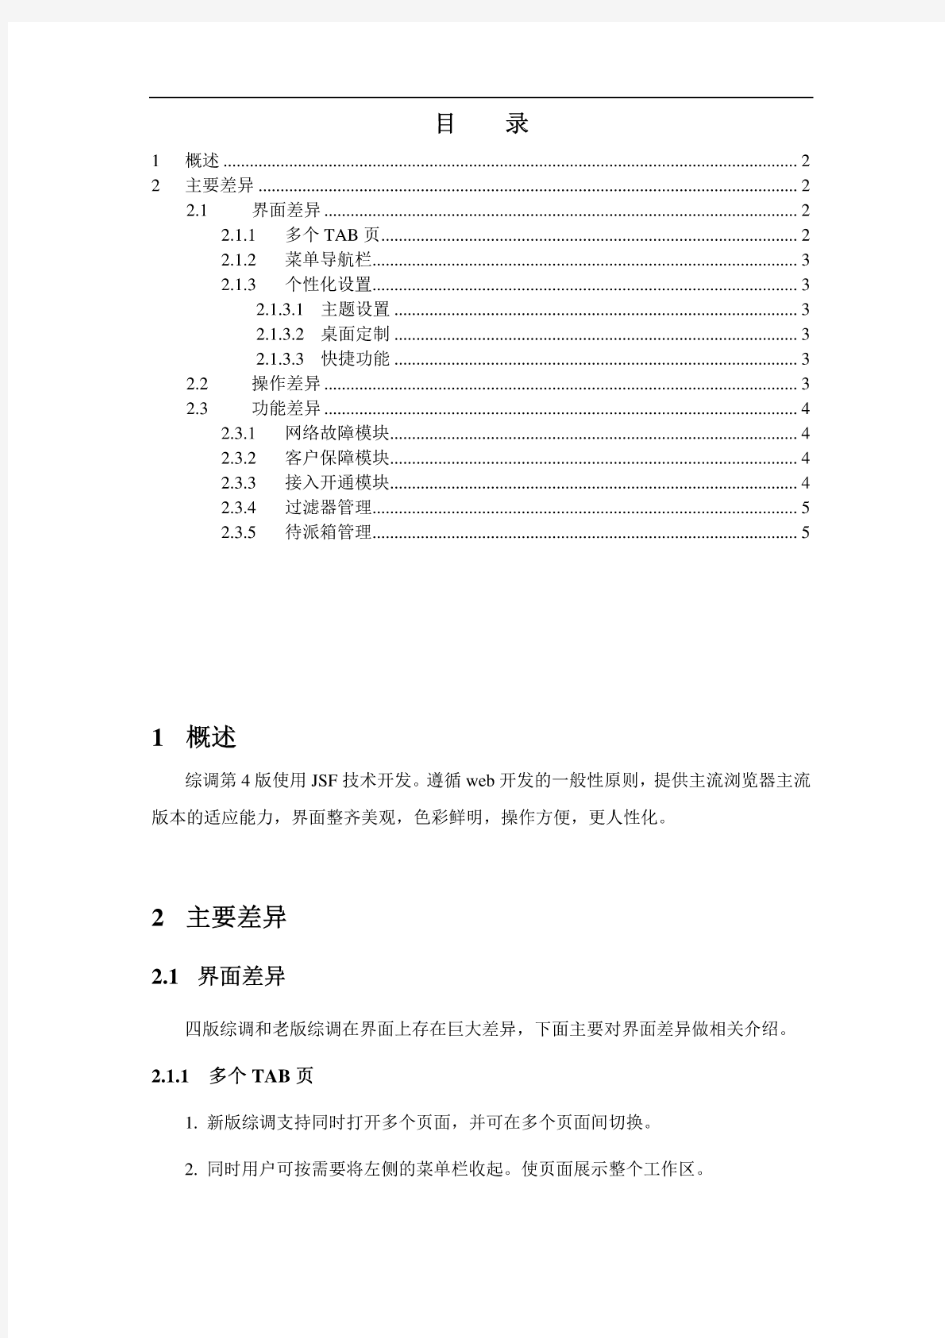 江苏电信综合调度系统-用户手册-总册